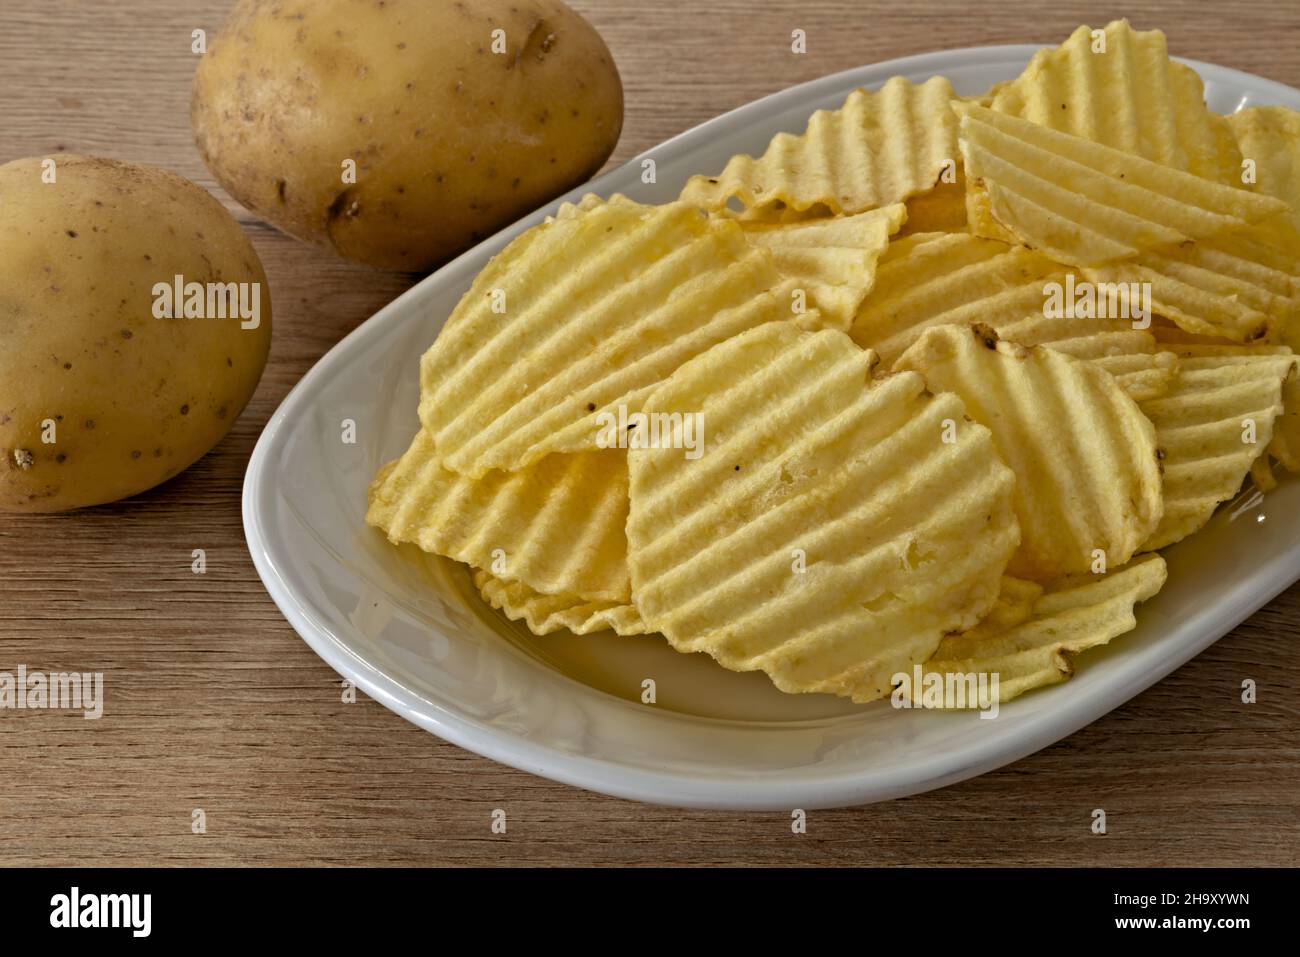 patate - patate fritte nel piatto primo piano vista da sopra con patate fresche Banque D'Images